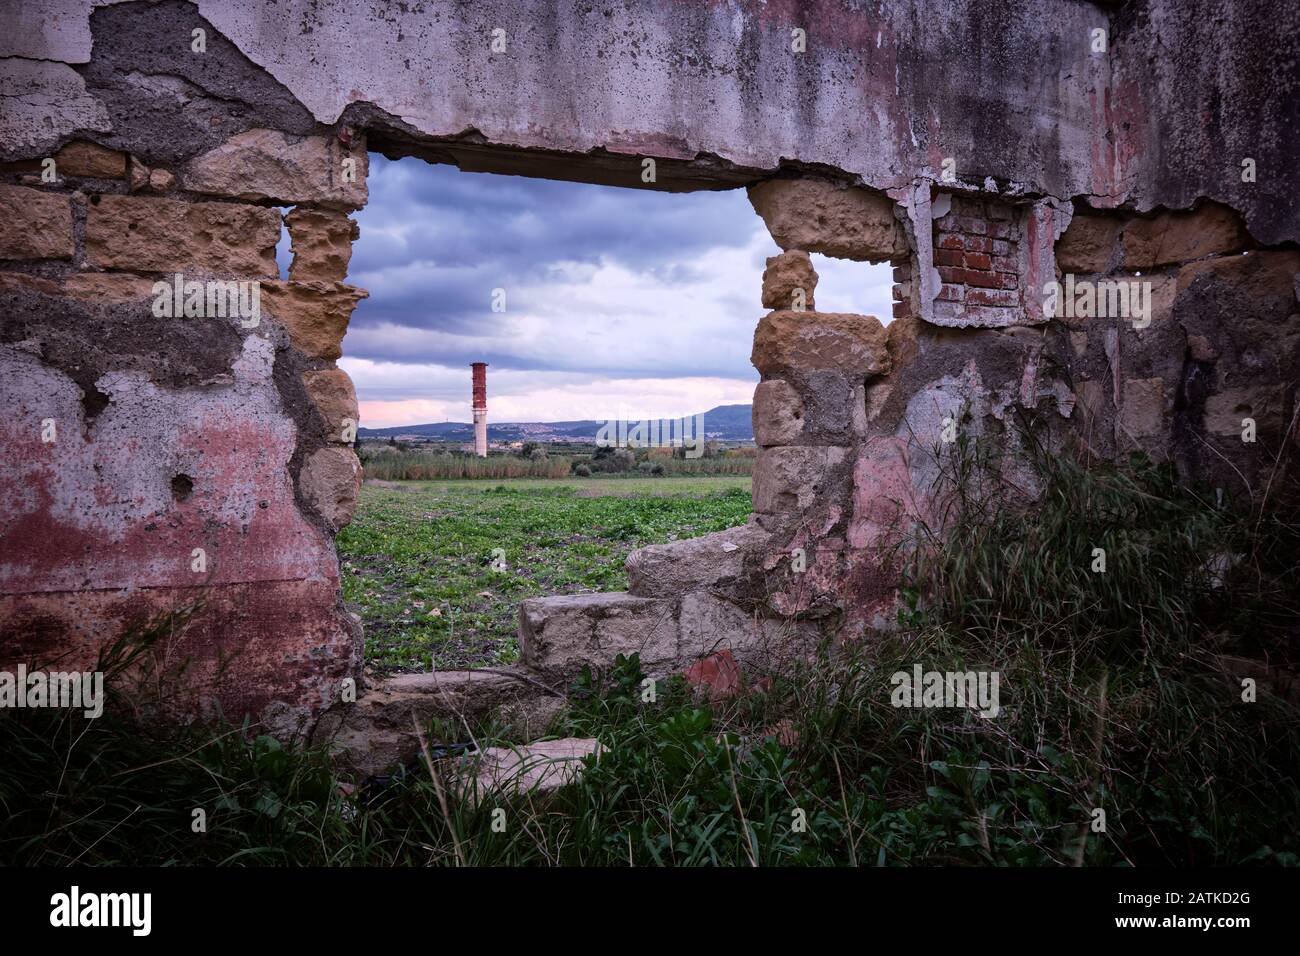 Arrêtez de regarder les murs, regardez la fenêtre. La campagne sicilienne vue depuis une fenêtre entre les murs ruinés Banque D'Images